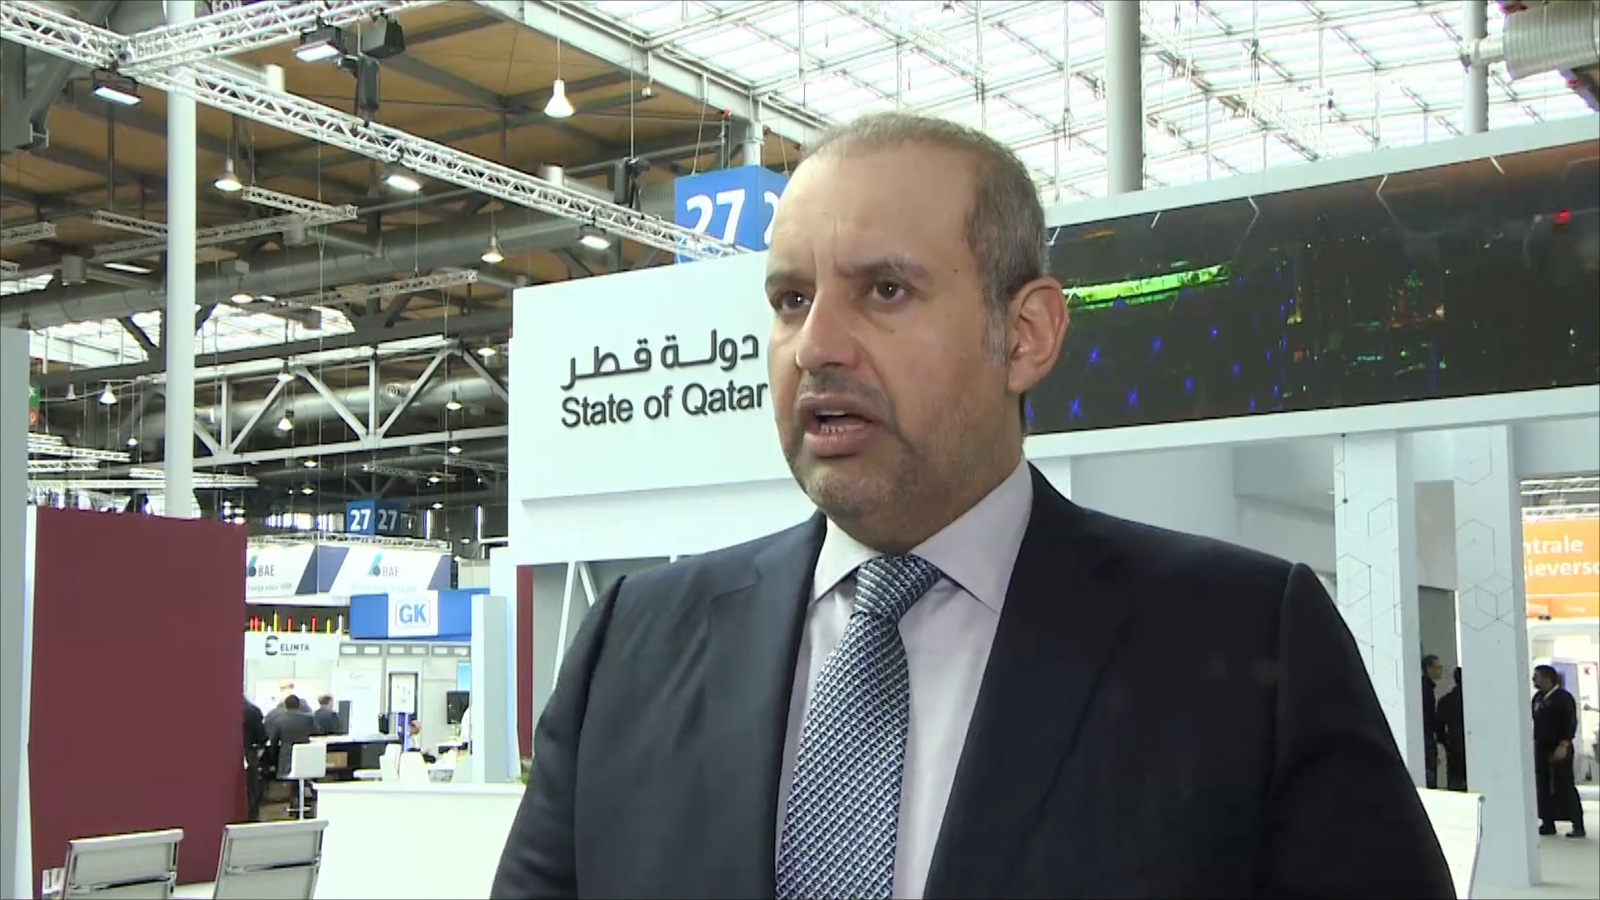 ‪وزير الاقتصاد القطري: قطر تعد اليوم وجهة جاذبة للاستثمار الأجنبي‬ (الجزيرة)